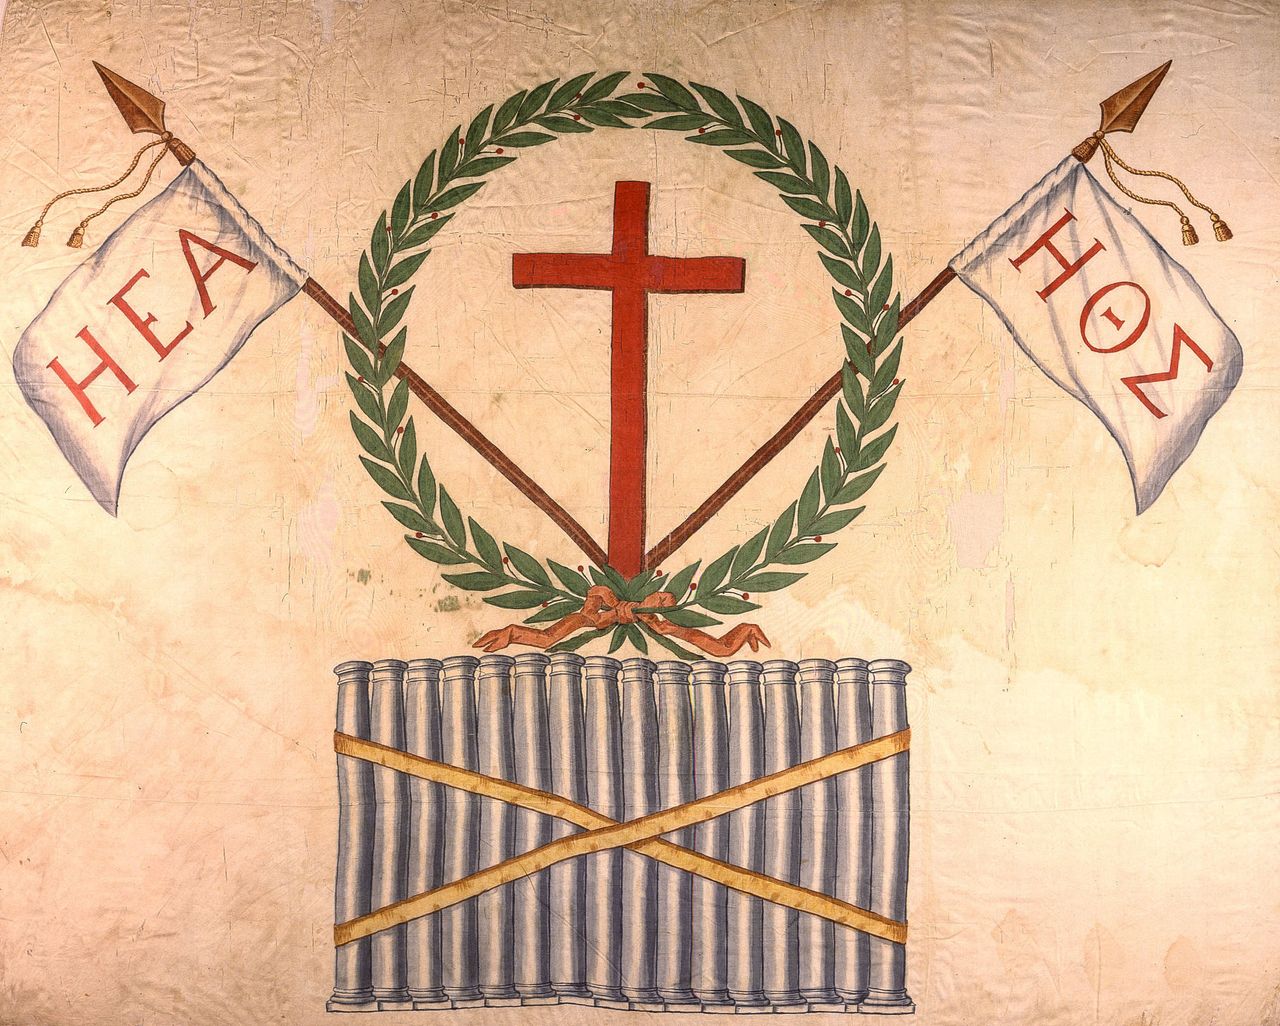 Σημαία με τα σύμβολα της Φιλικής Εταιρείας. Κατασκευάστηκε τις παραμονές της Επανάστασης με τις οδηγίες του Παλαιών Πατρών Γερμανού. Υψώθηκε στην Ήλιδα από τον προεστό Γεώργιο Σισίνη. Κυρίαρχα σύμβολα είναι ο σταυρός και το σύνθημα Ή Ε[λευθερί]α ή Θ[άνατο]ς. Είναι η μόνη σωζόμενη από τις πρώτες κοινές σημαίες που διένειμε το «Πελοποννησιακό Διευθυντήριο» στους καπεταναίους κατά την κήρυξη της Επανάστασης.